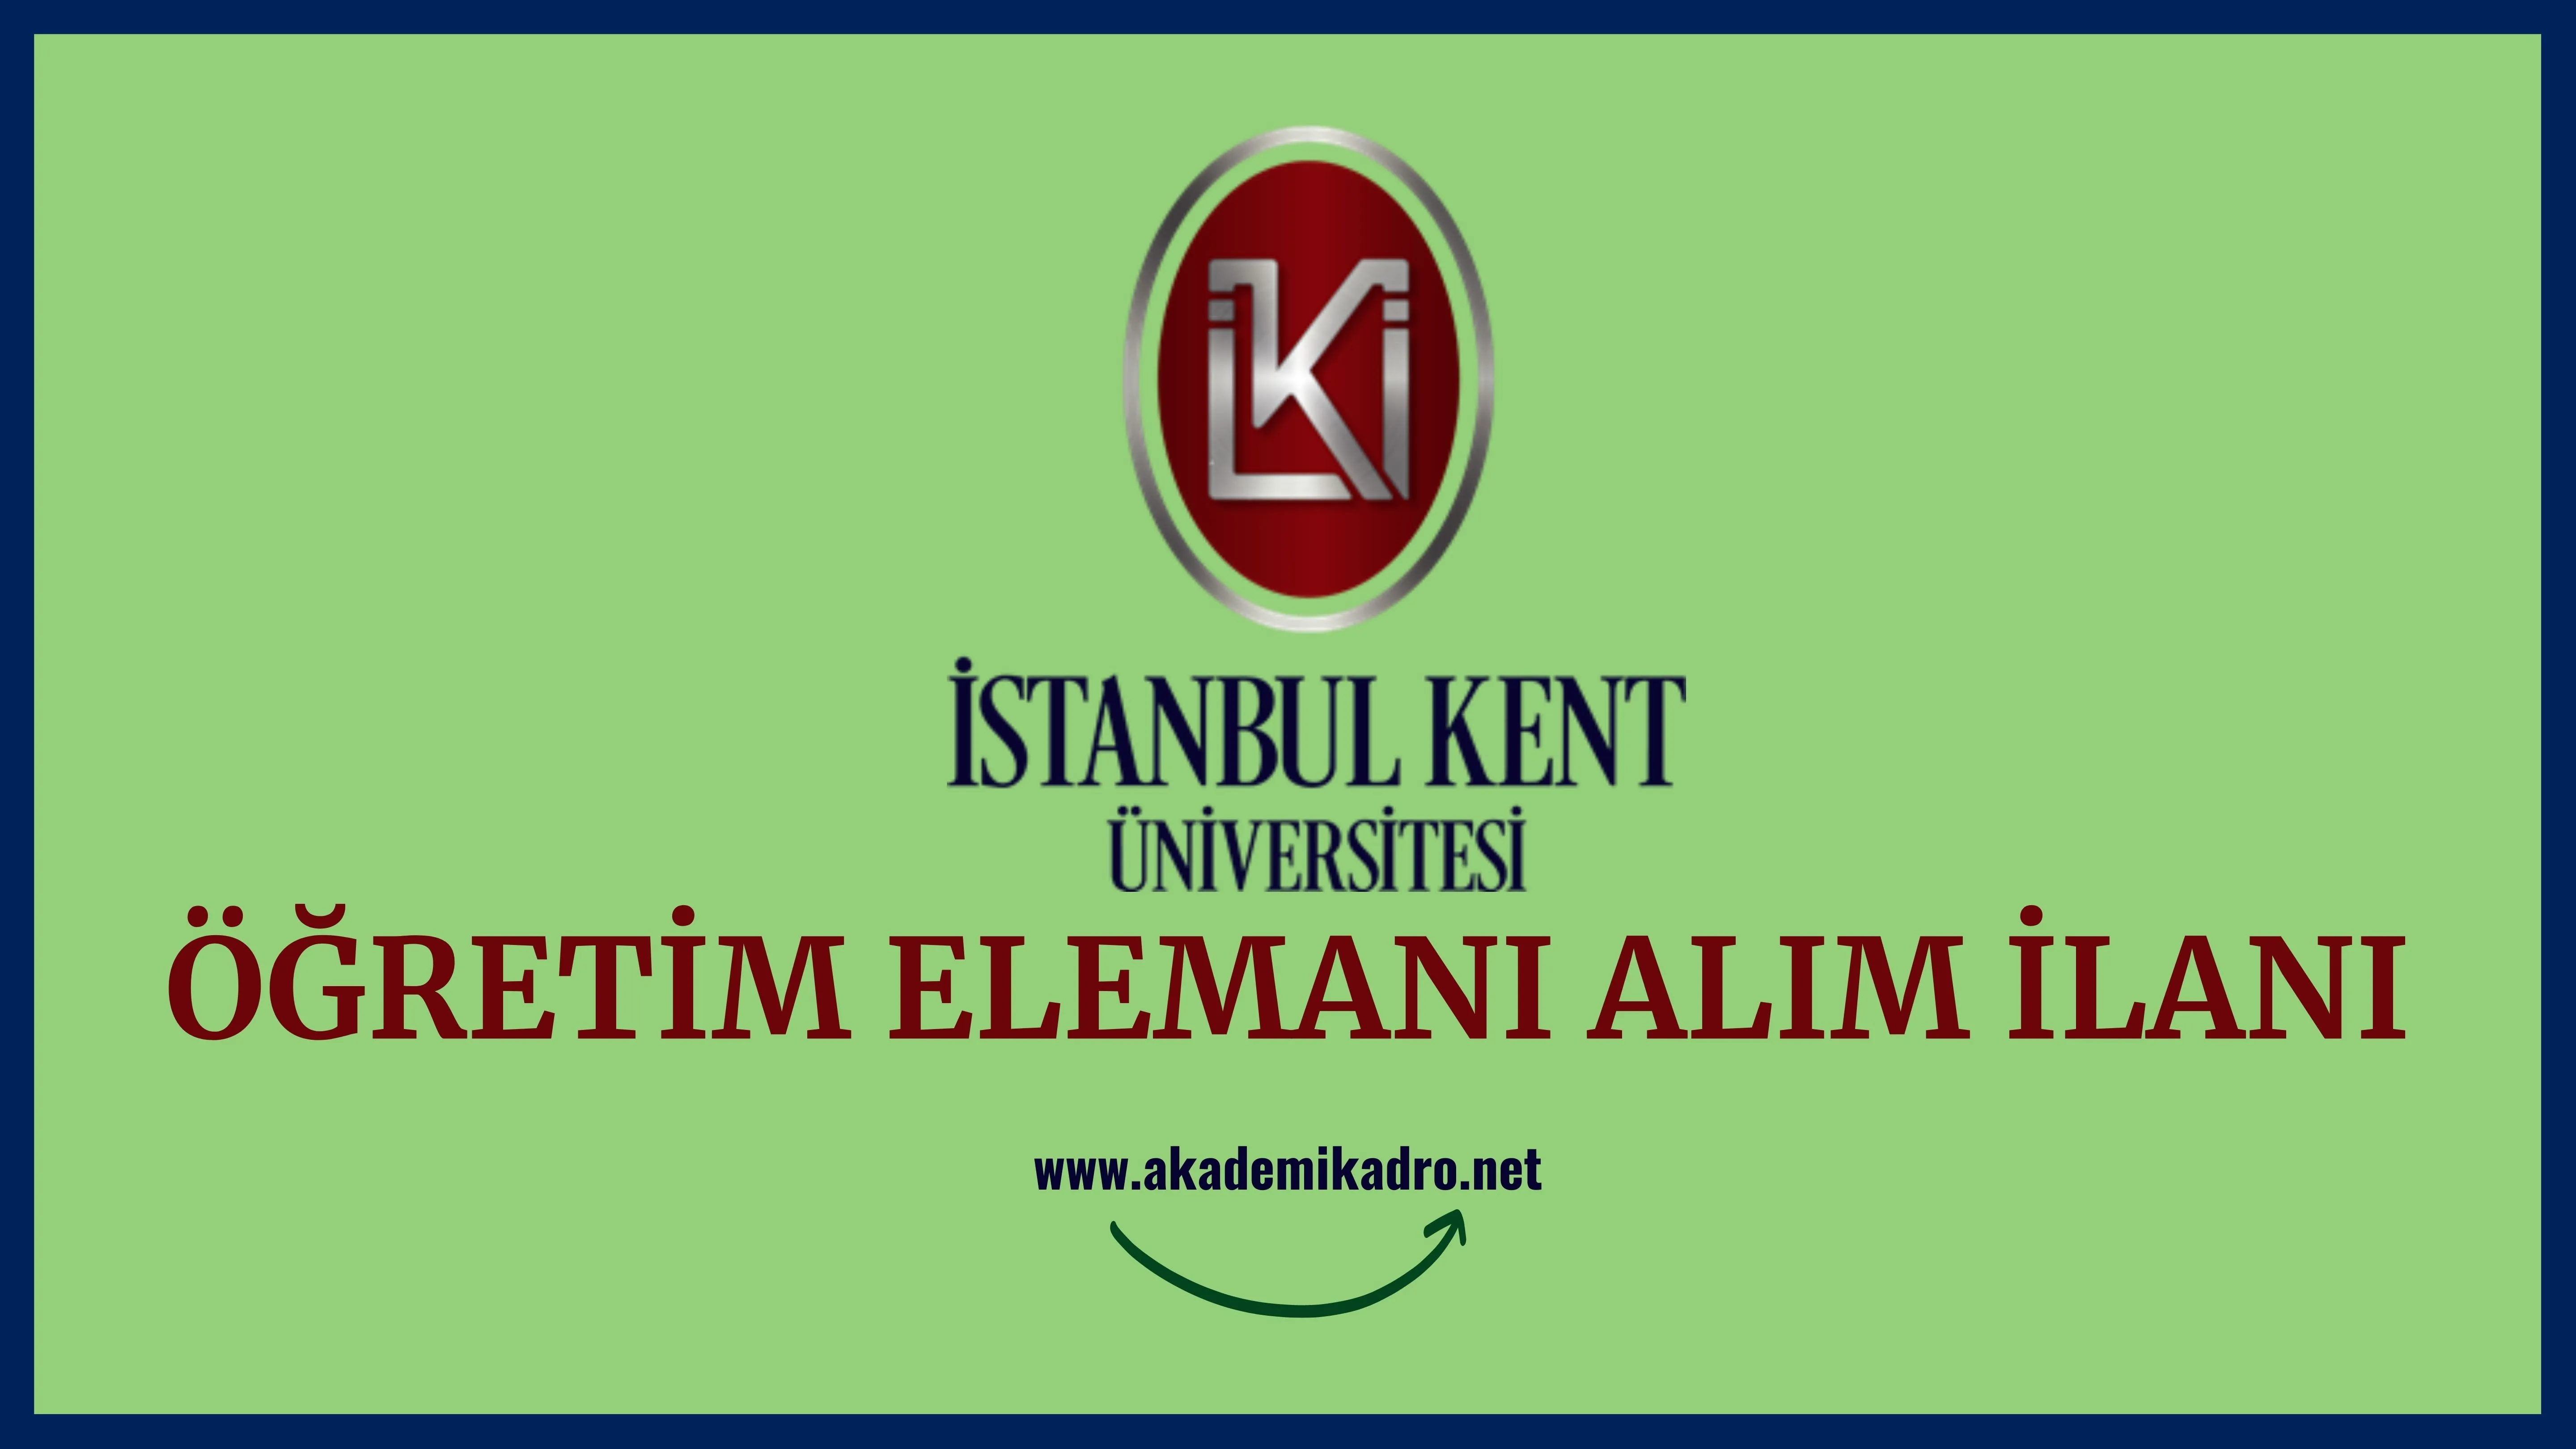 İstanbul Kent Üniversitesi 4 Araştırma Görevlisi, 6 Öğretim görevlisi ve 17 Öğretim üyesi alacak. 